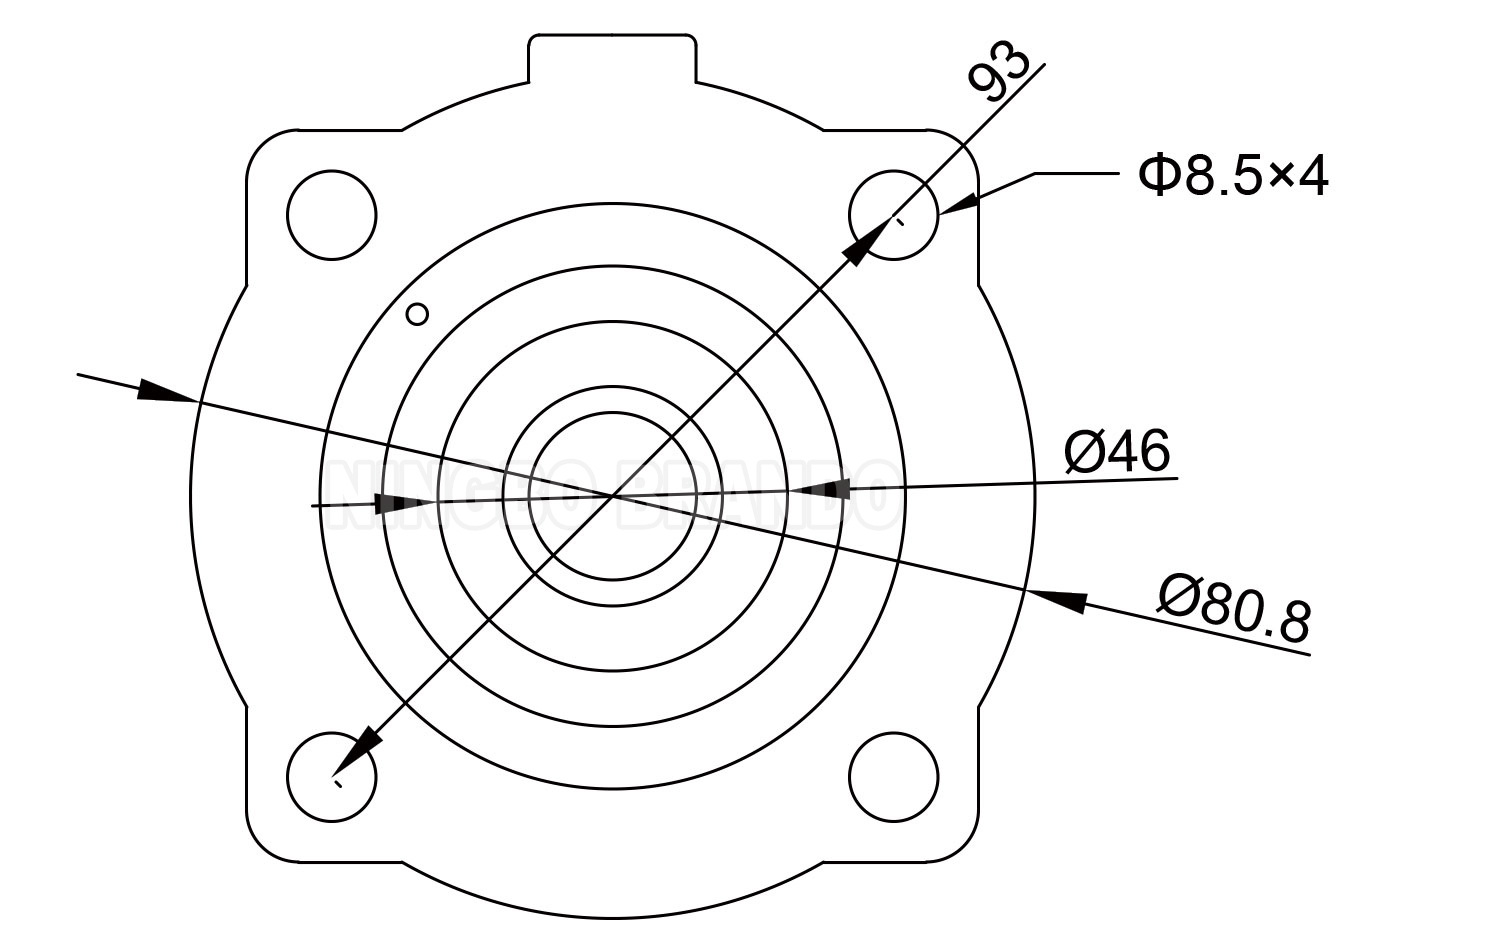 K2546 Shockwave Diaphragm для комплекта для ремонта мембраны дюймового клапана для коллекционера пыли.